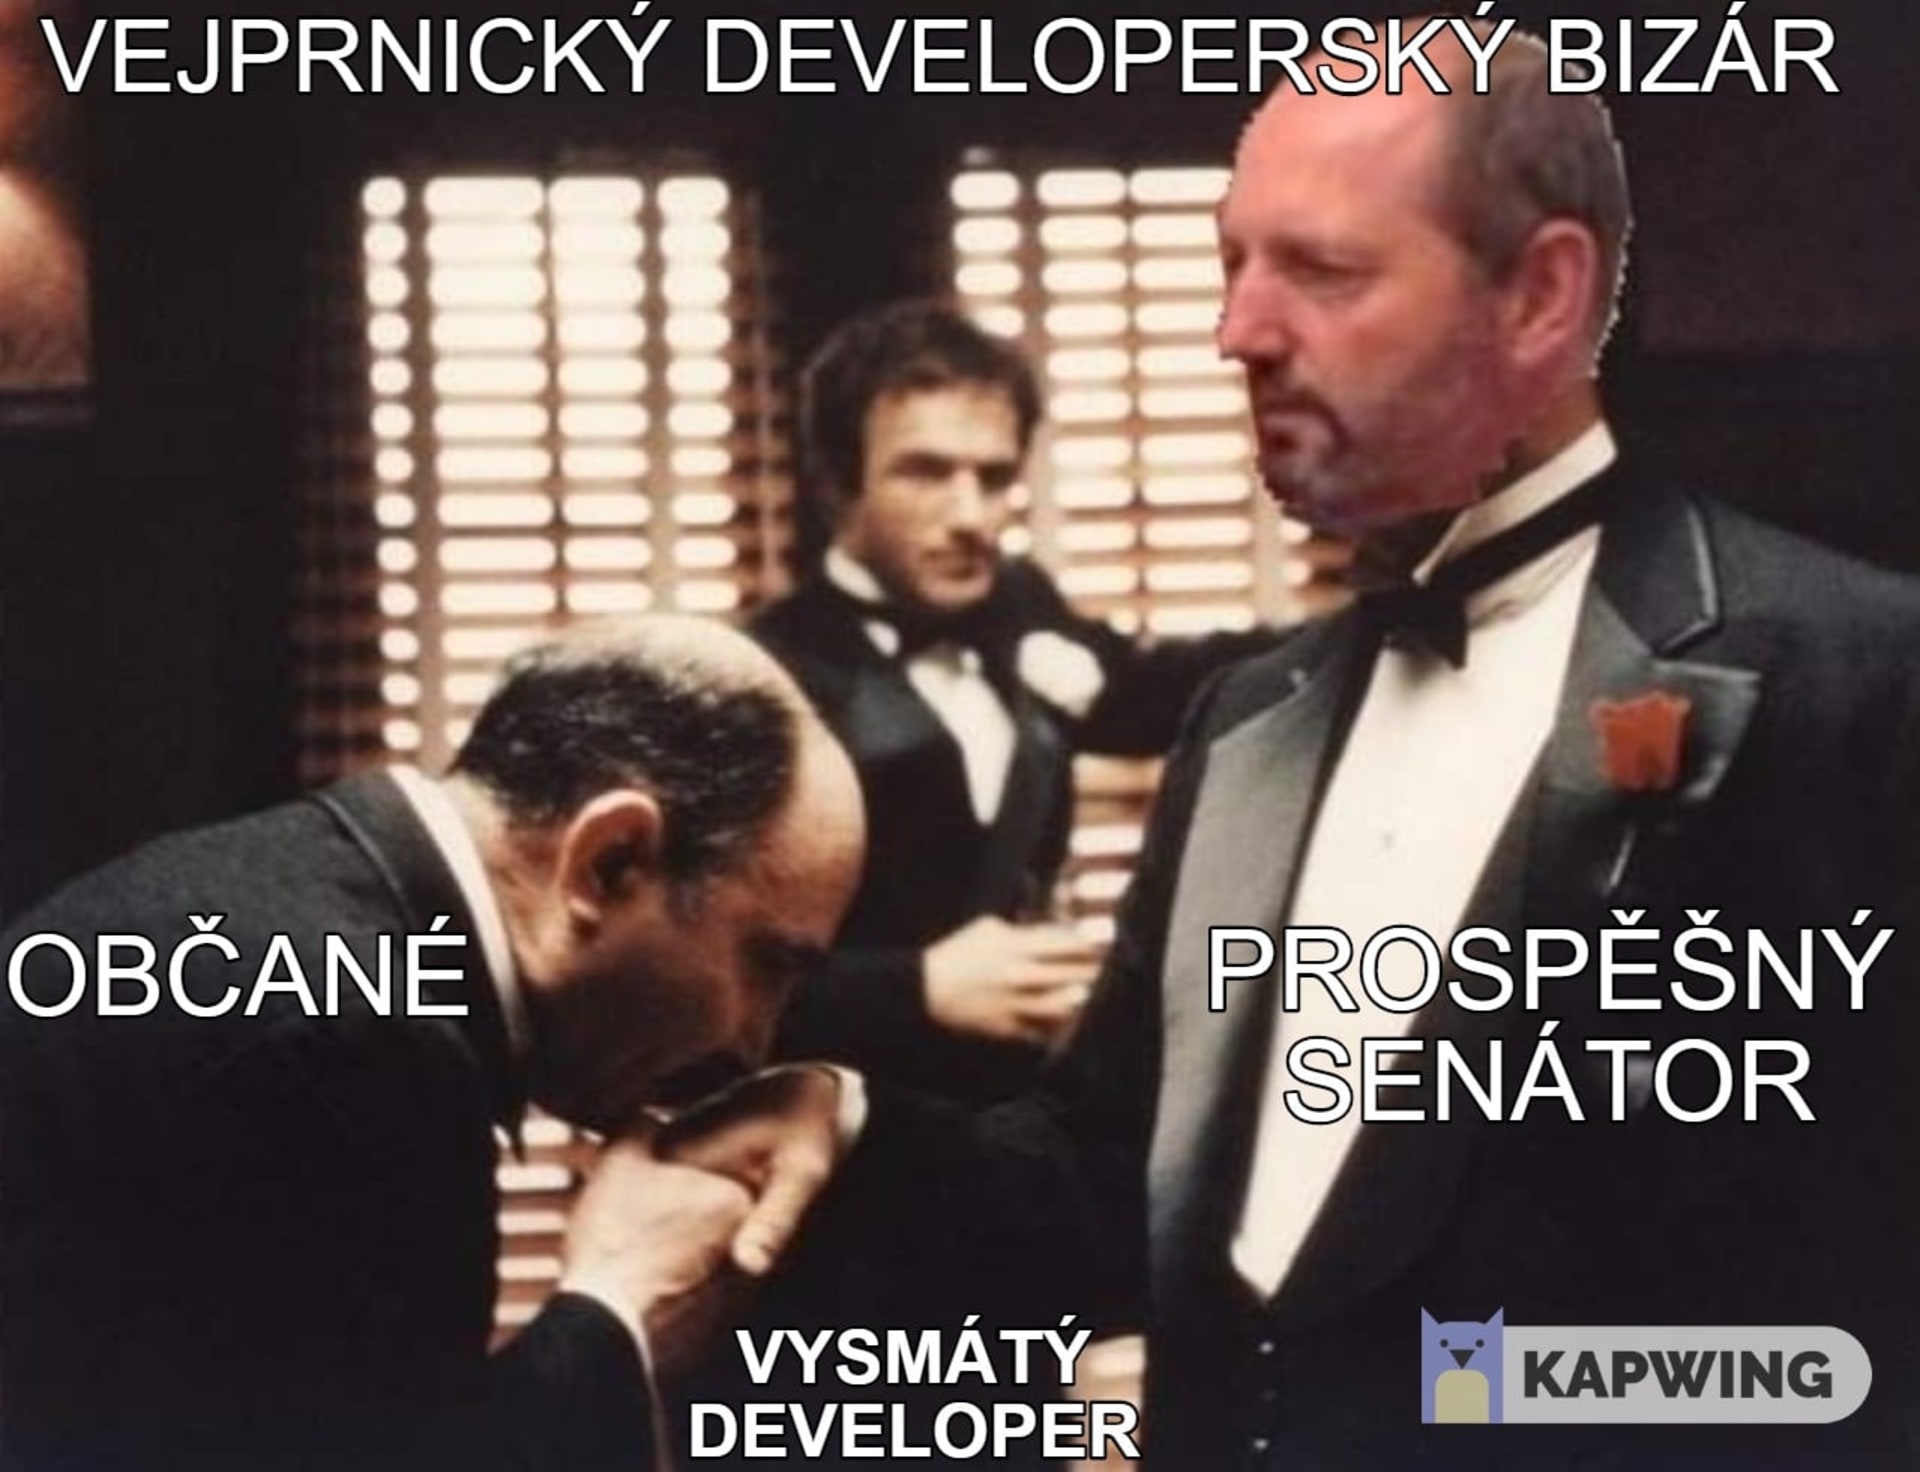 Tuto koláž, kde je senátor za ODS Pavel Karpíšek vylíčen jako sicilský mafián, má na svědomí pirátský krajský zastupitel Jiří Pek. 